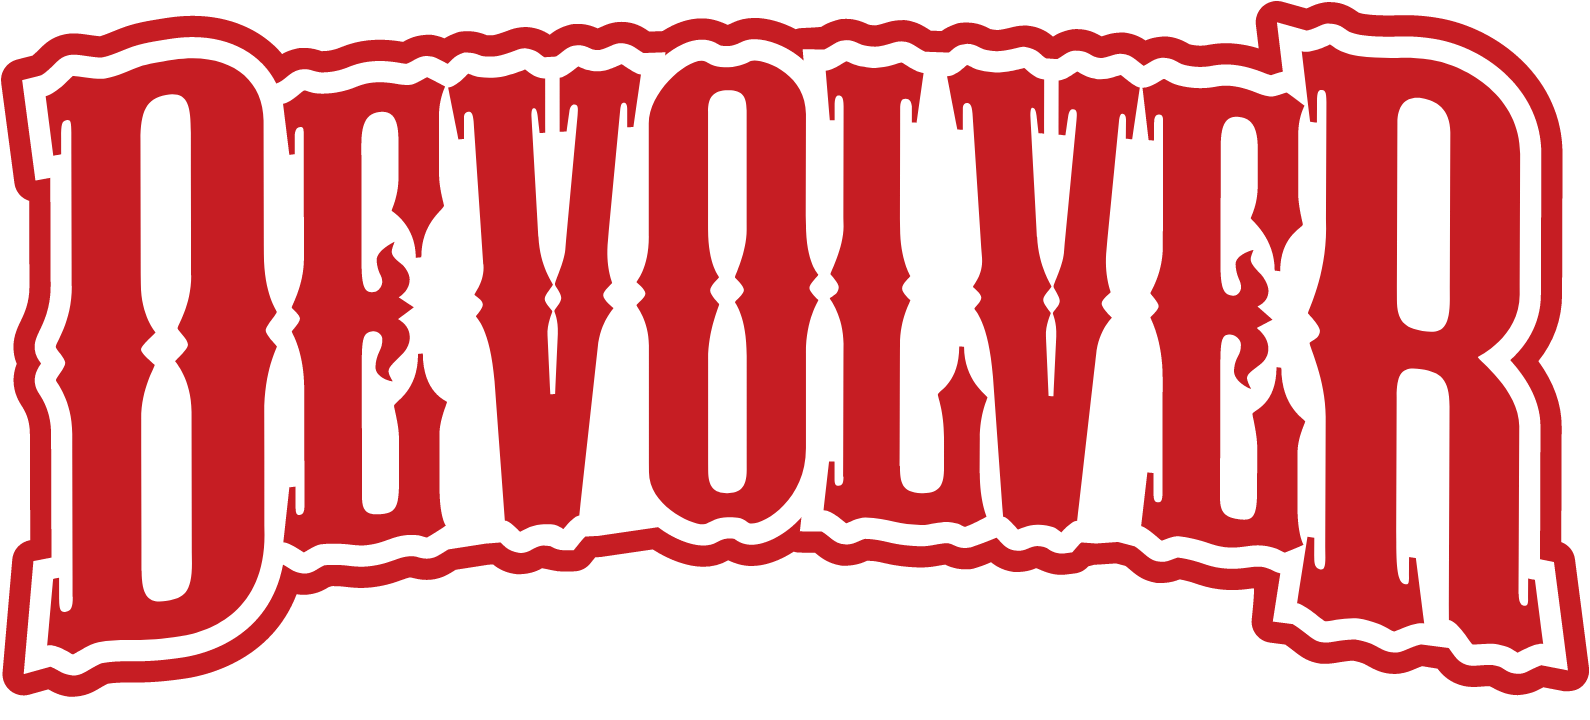 Devolver Digital logo large for dark backgrounds (transparent PNG)